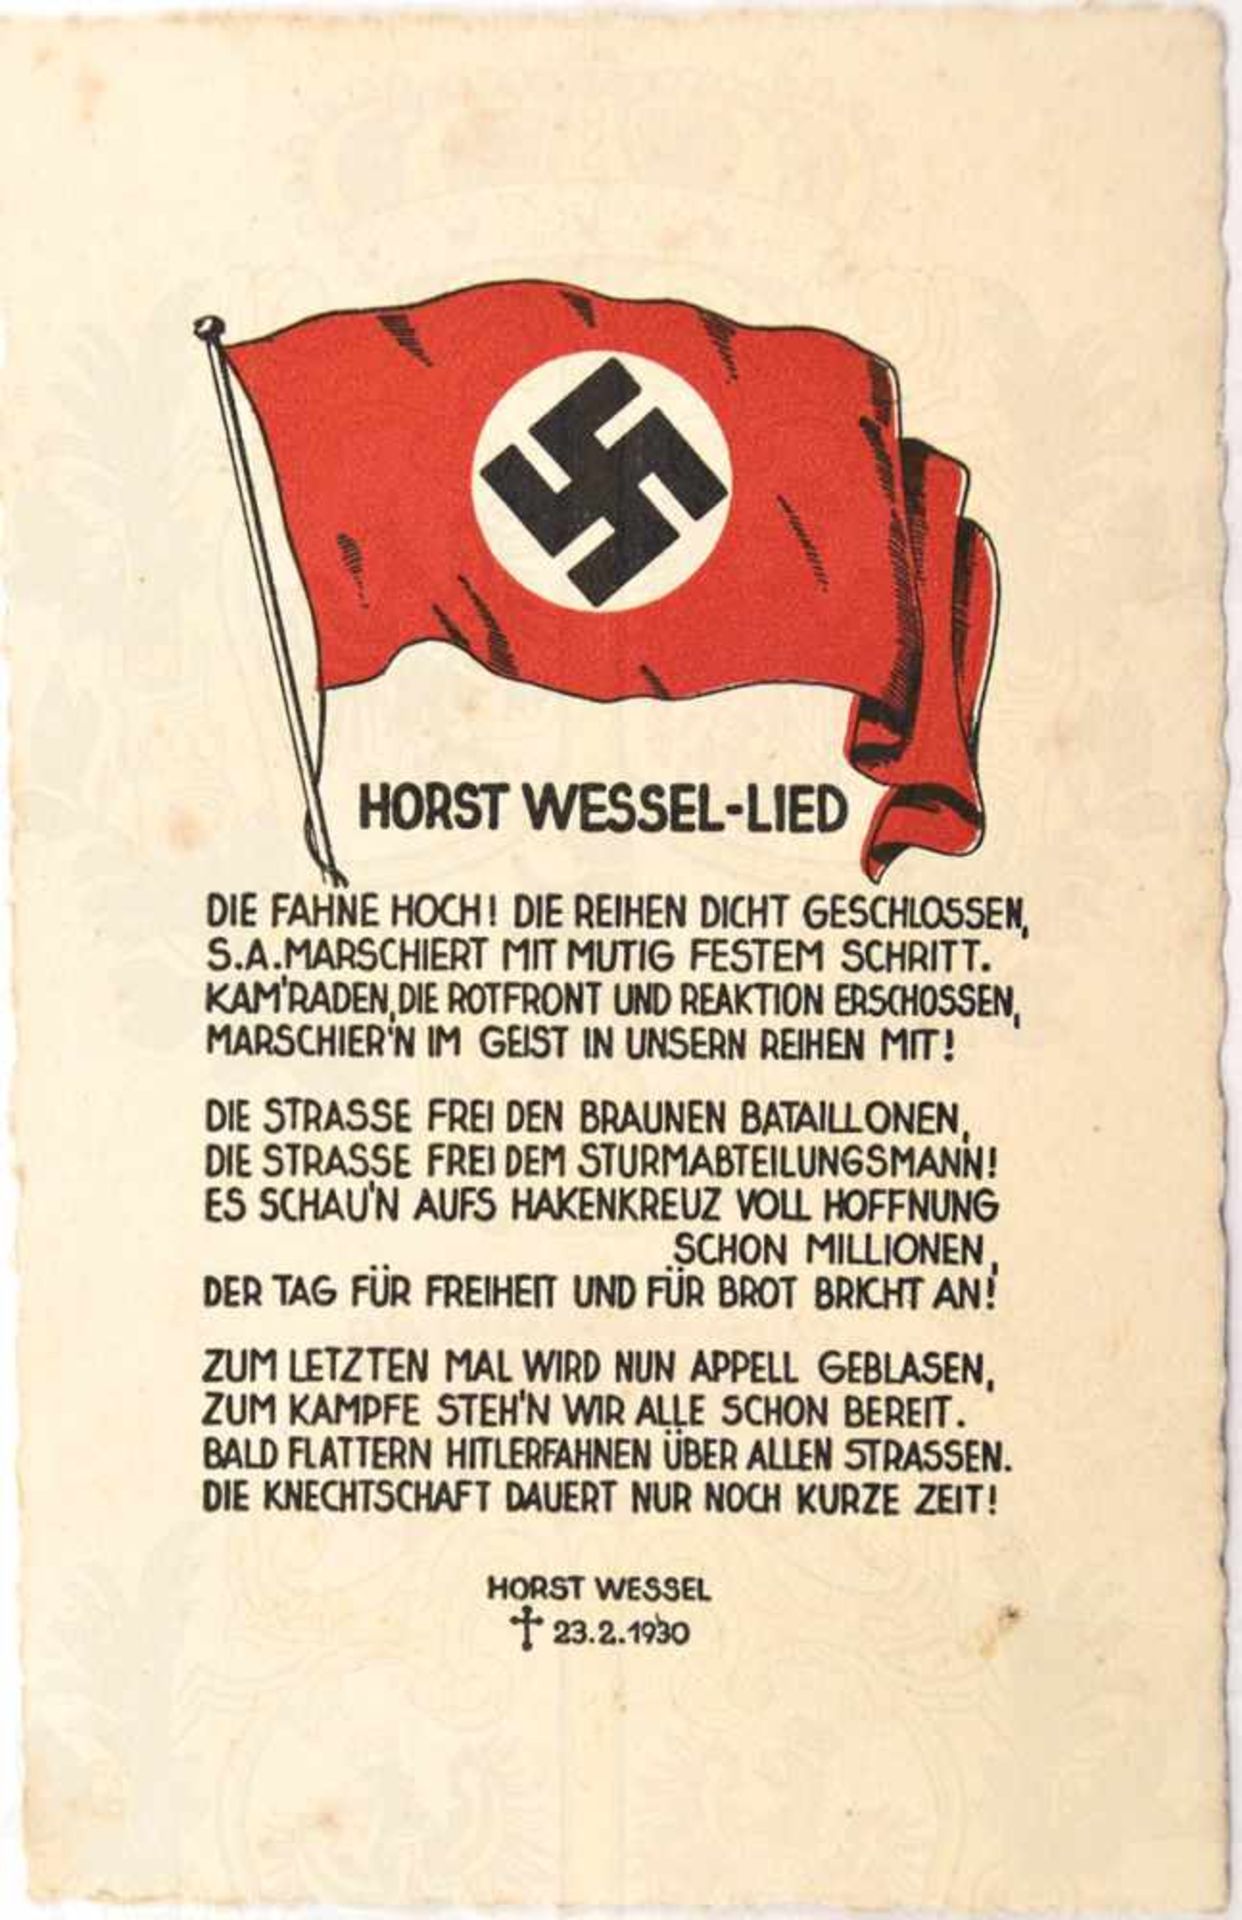 HORST WESSEL-LIED, farb. Prop.-AK, m. HK-Fahne u. kpl. Text, Labi-V. Dresden, um 1933